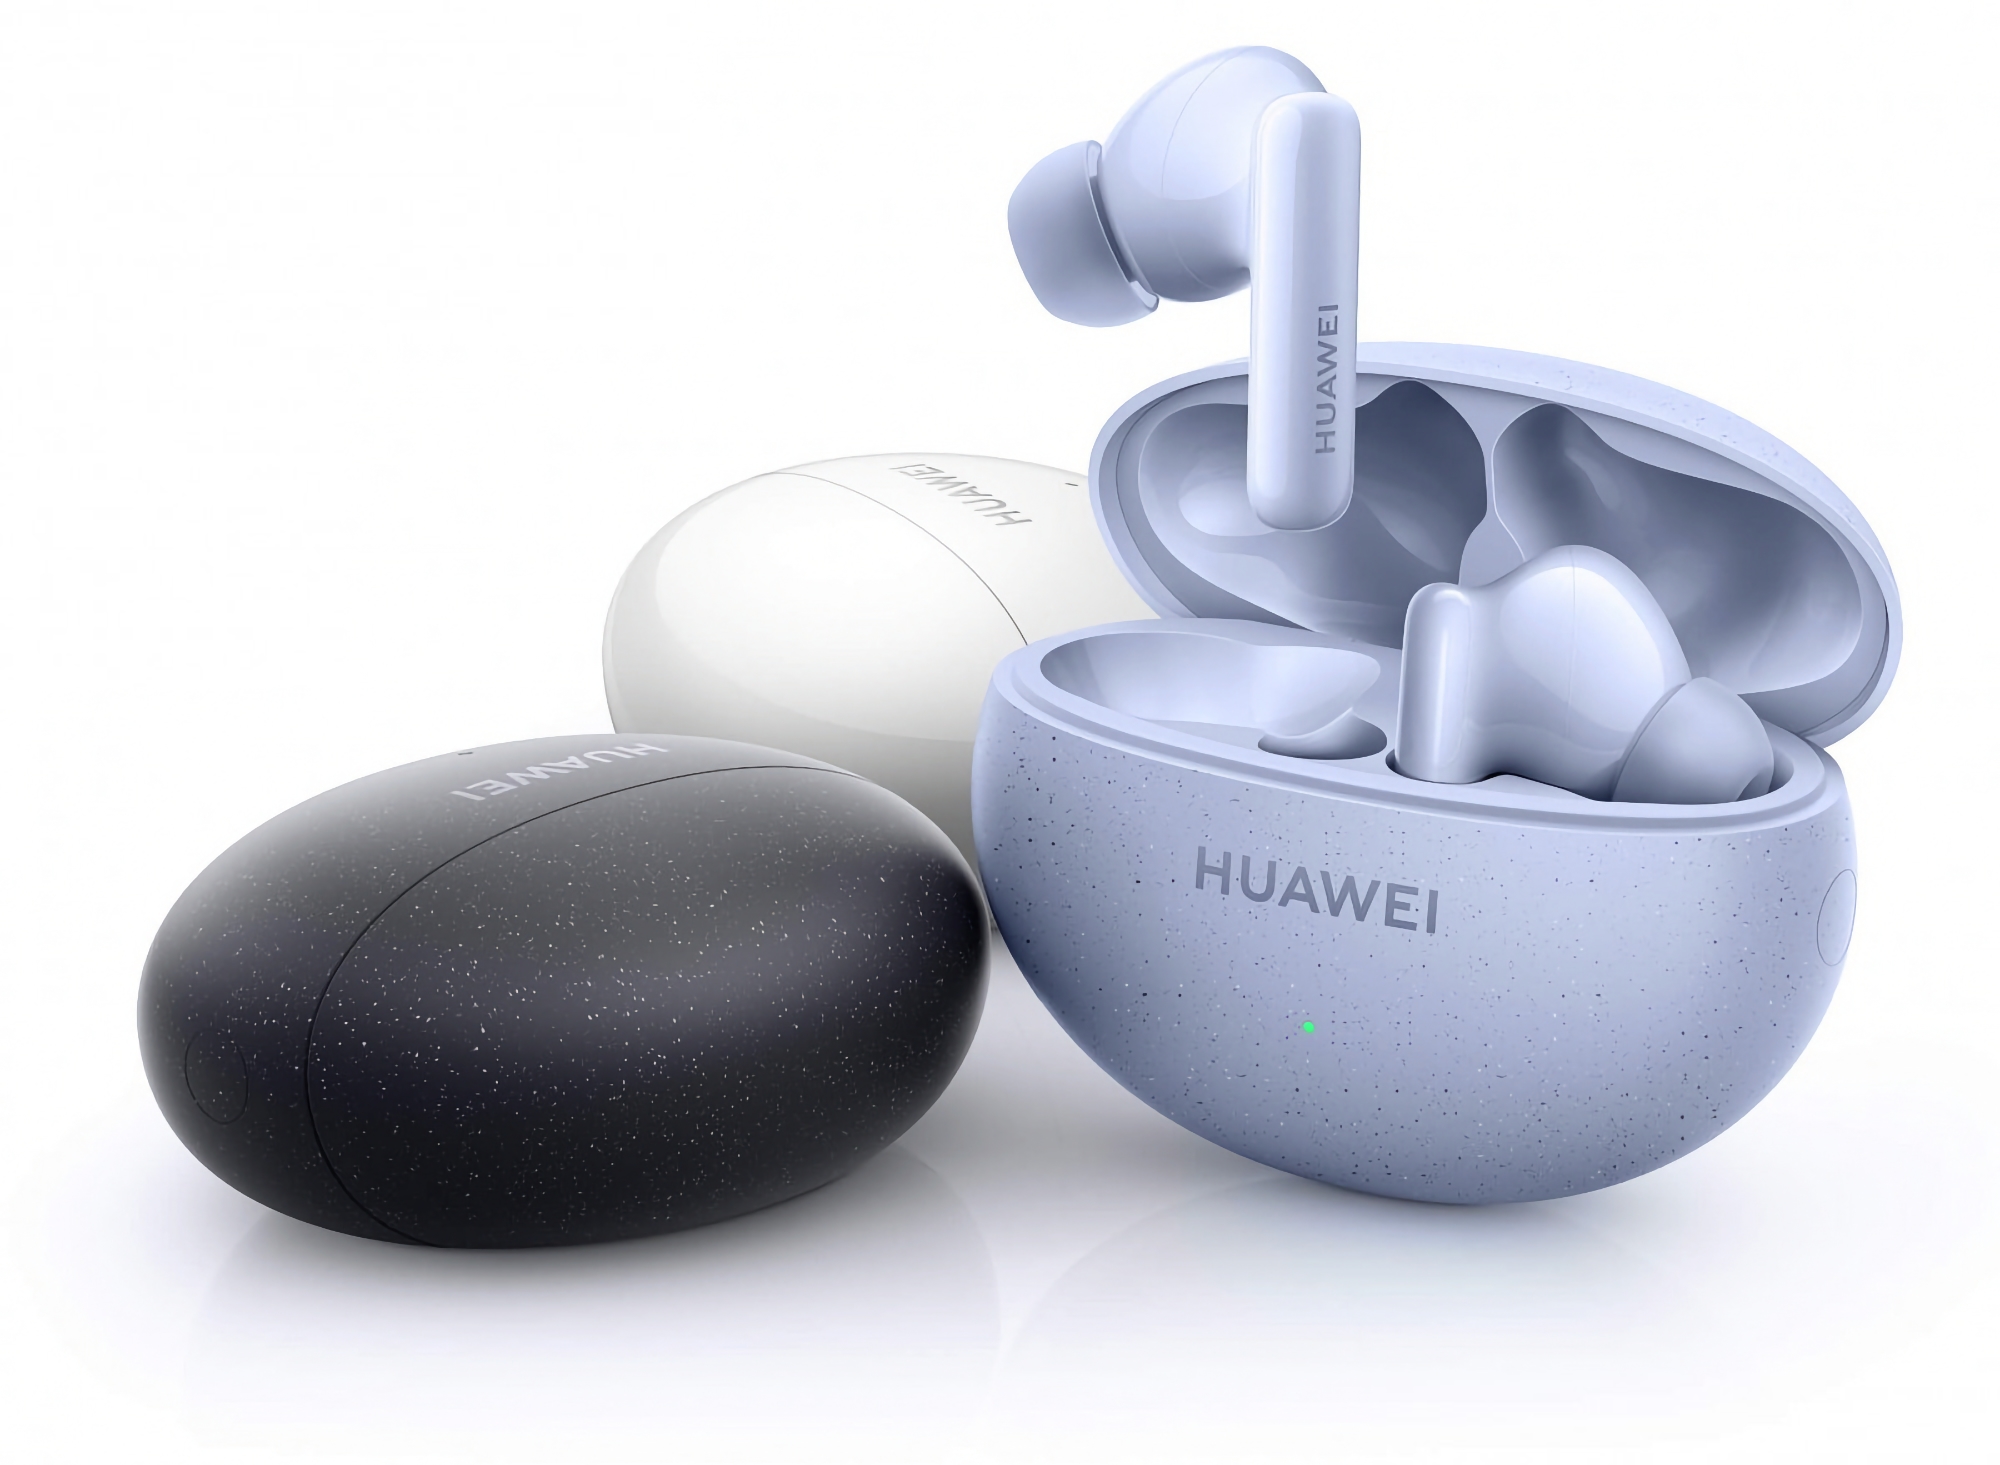 Le Huawei Freebuds 5i avec ANC, Bluetooth 5.2 et jusqu'à 28 heures d'autonomie a été introduit sur le marché mondial.